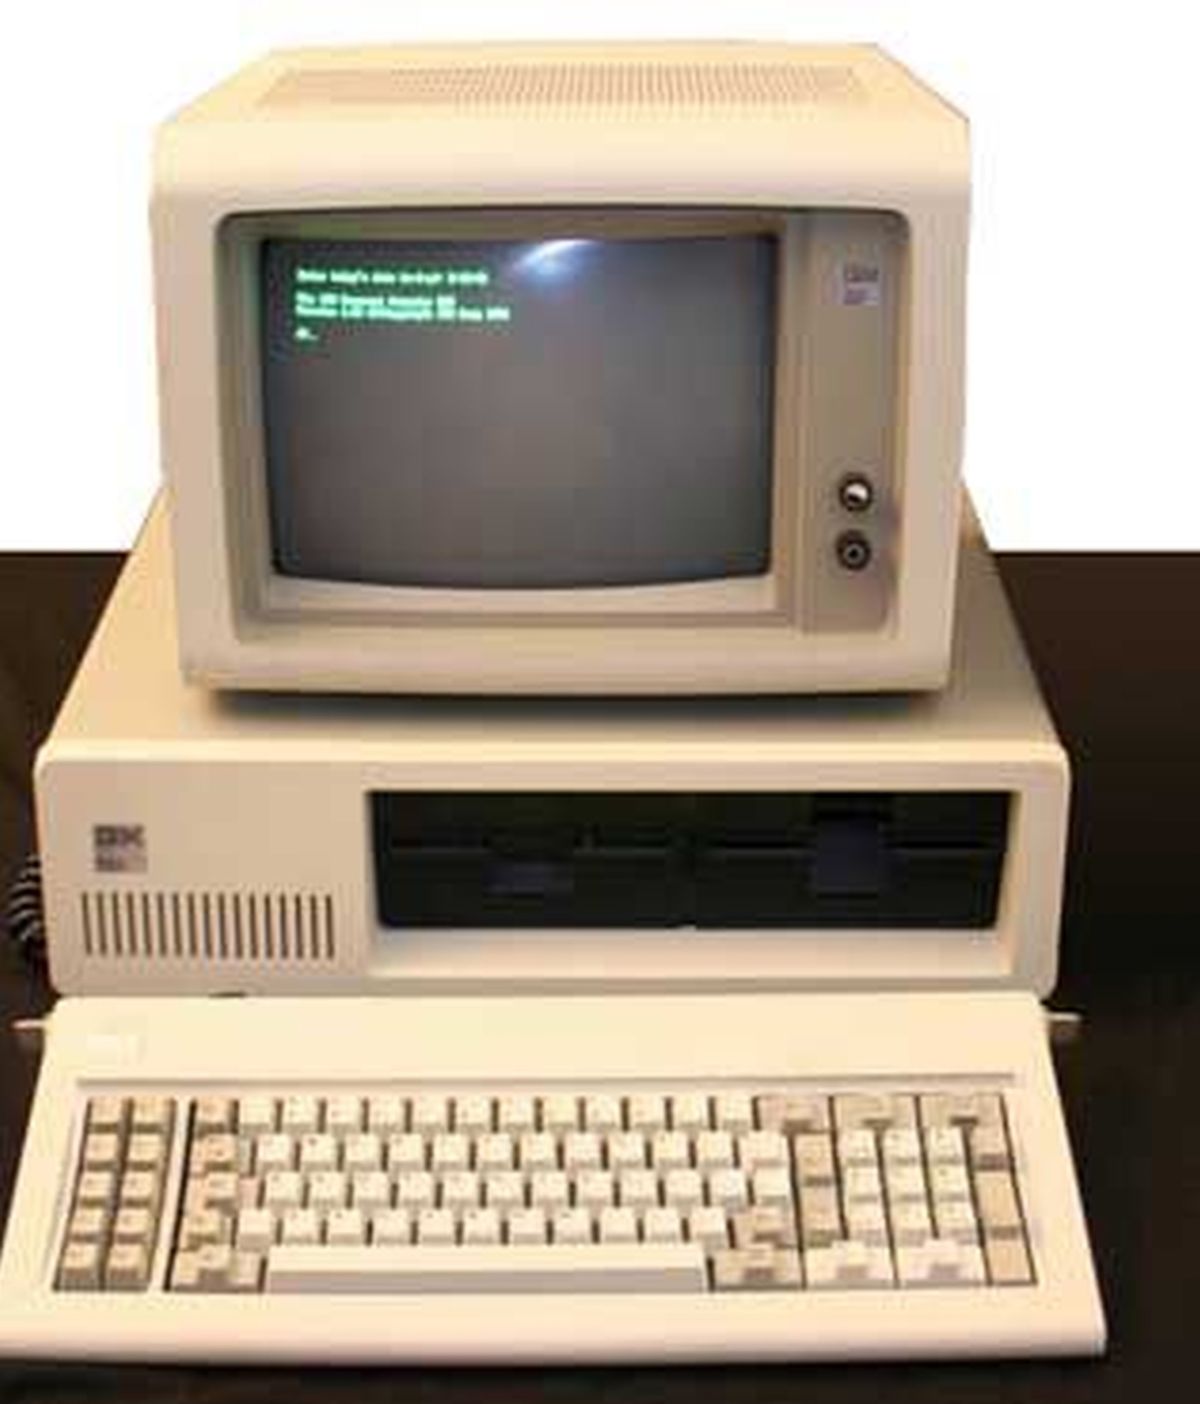 Los ordenadores personales, un invento de IBM que llegó tarde al mercado y con errores que le hicieron retrasarse en el sector tecnológico.